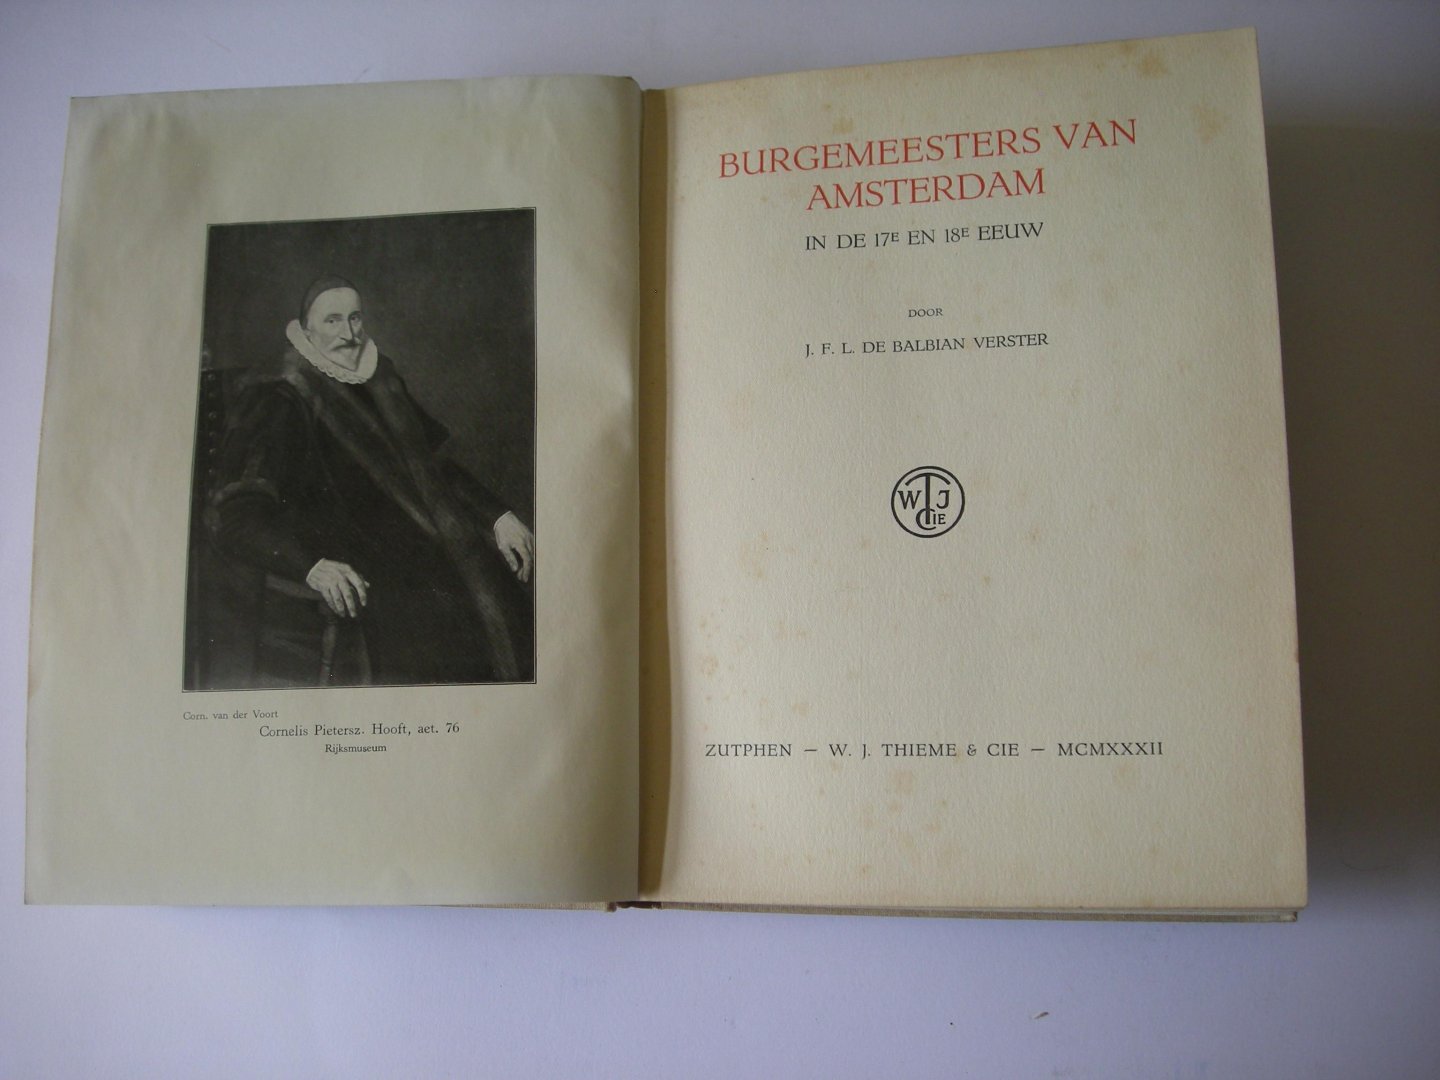 Balbian Verster, J.F.L. de - Burgemeesters van Amsterdam in de 17e en 18e eeuw